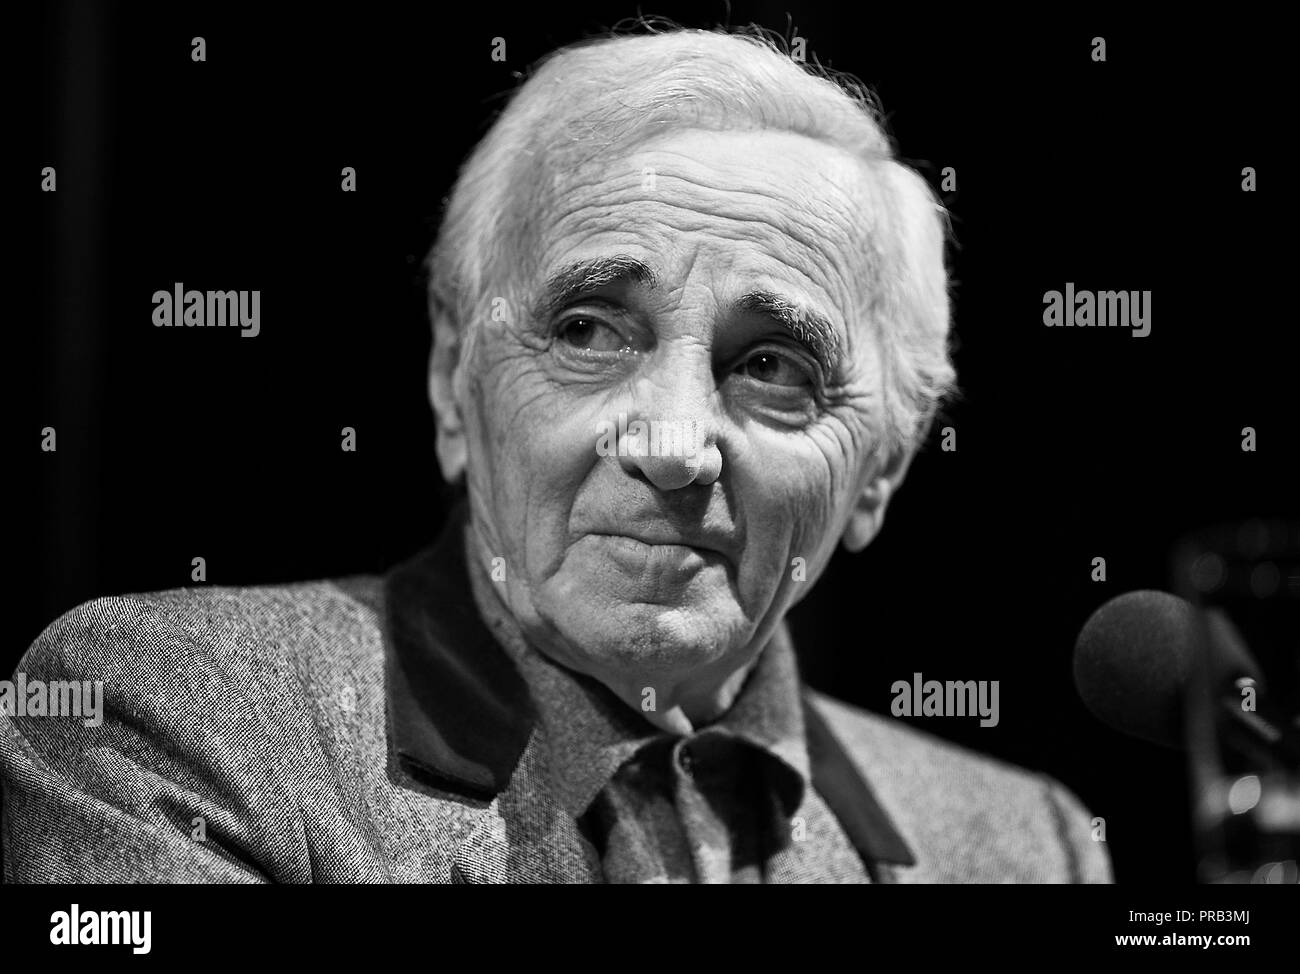 Köln, Deutschland. 01 Okt, 2018. Charles Aznavour starb im Alter von 94 Jahren in der Provence. Archiv Foto; Charles Aznavour, FRA/ARM, chansonnier, Portraits, Portrait, während einer Lesung während des Literaturfestivals lit.Cologne am 17.03.2011 in Koeln | Verwendung der weltweiten Kredit: dpa/Alamy leben Nachrichten Stockfoto